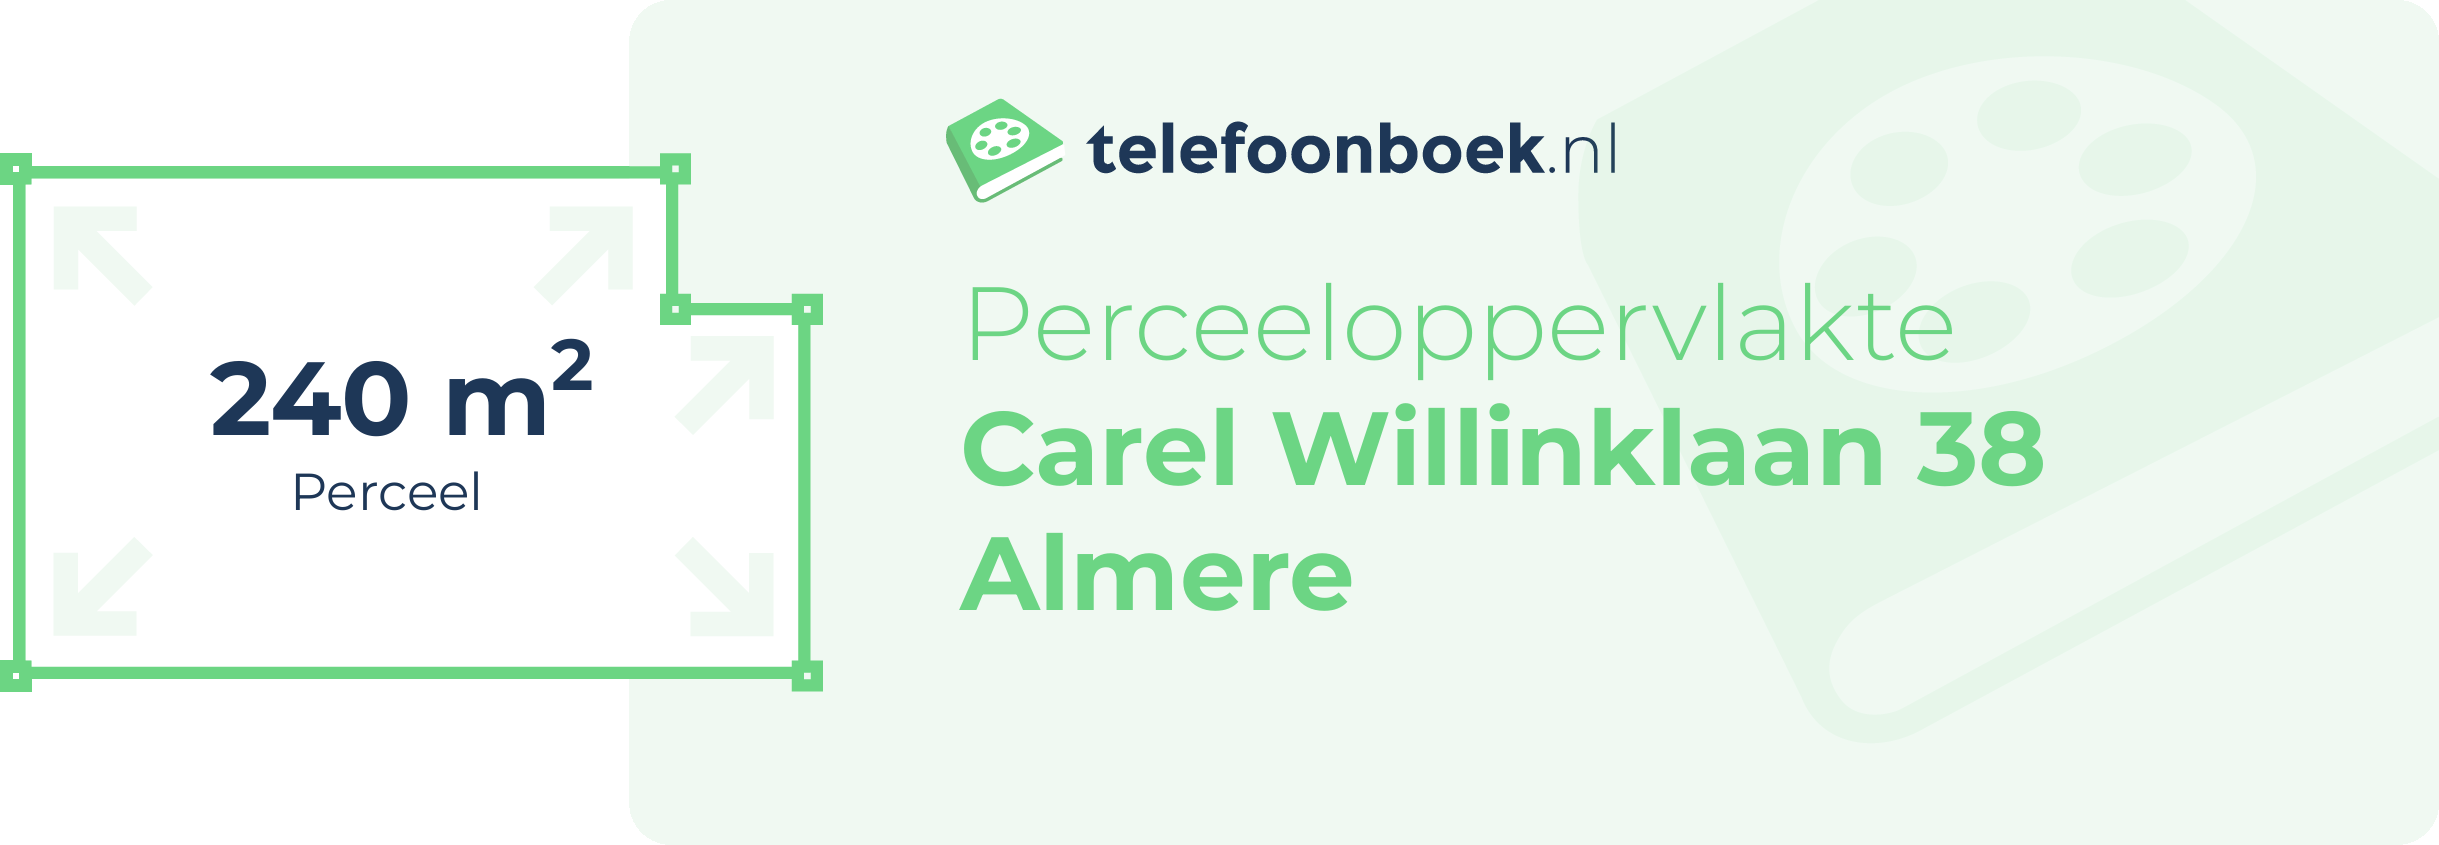 Perceeloppervlakte Carel Willinklaan 38 Almere